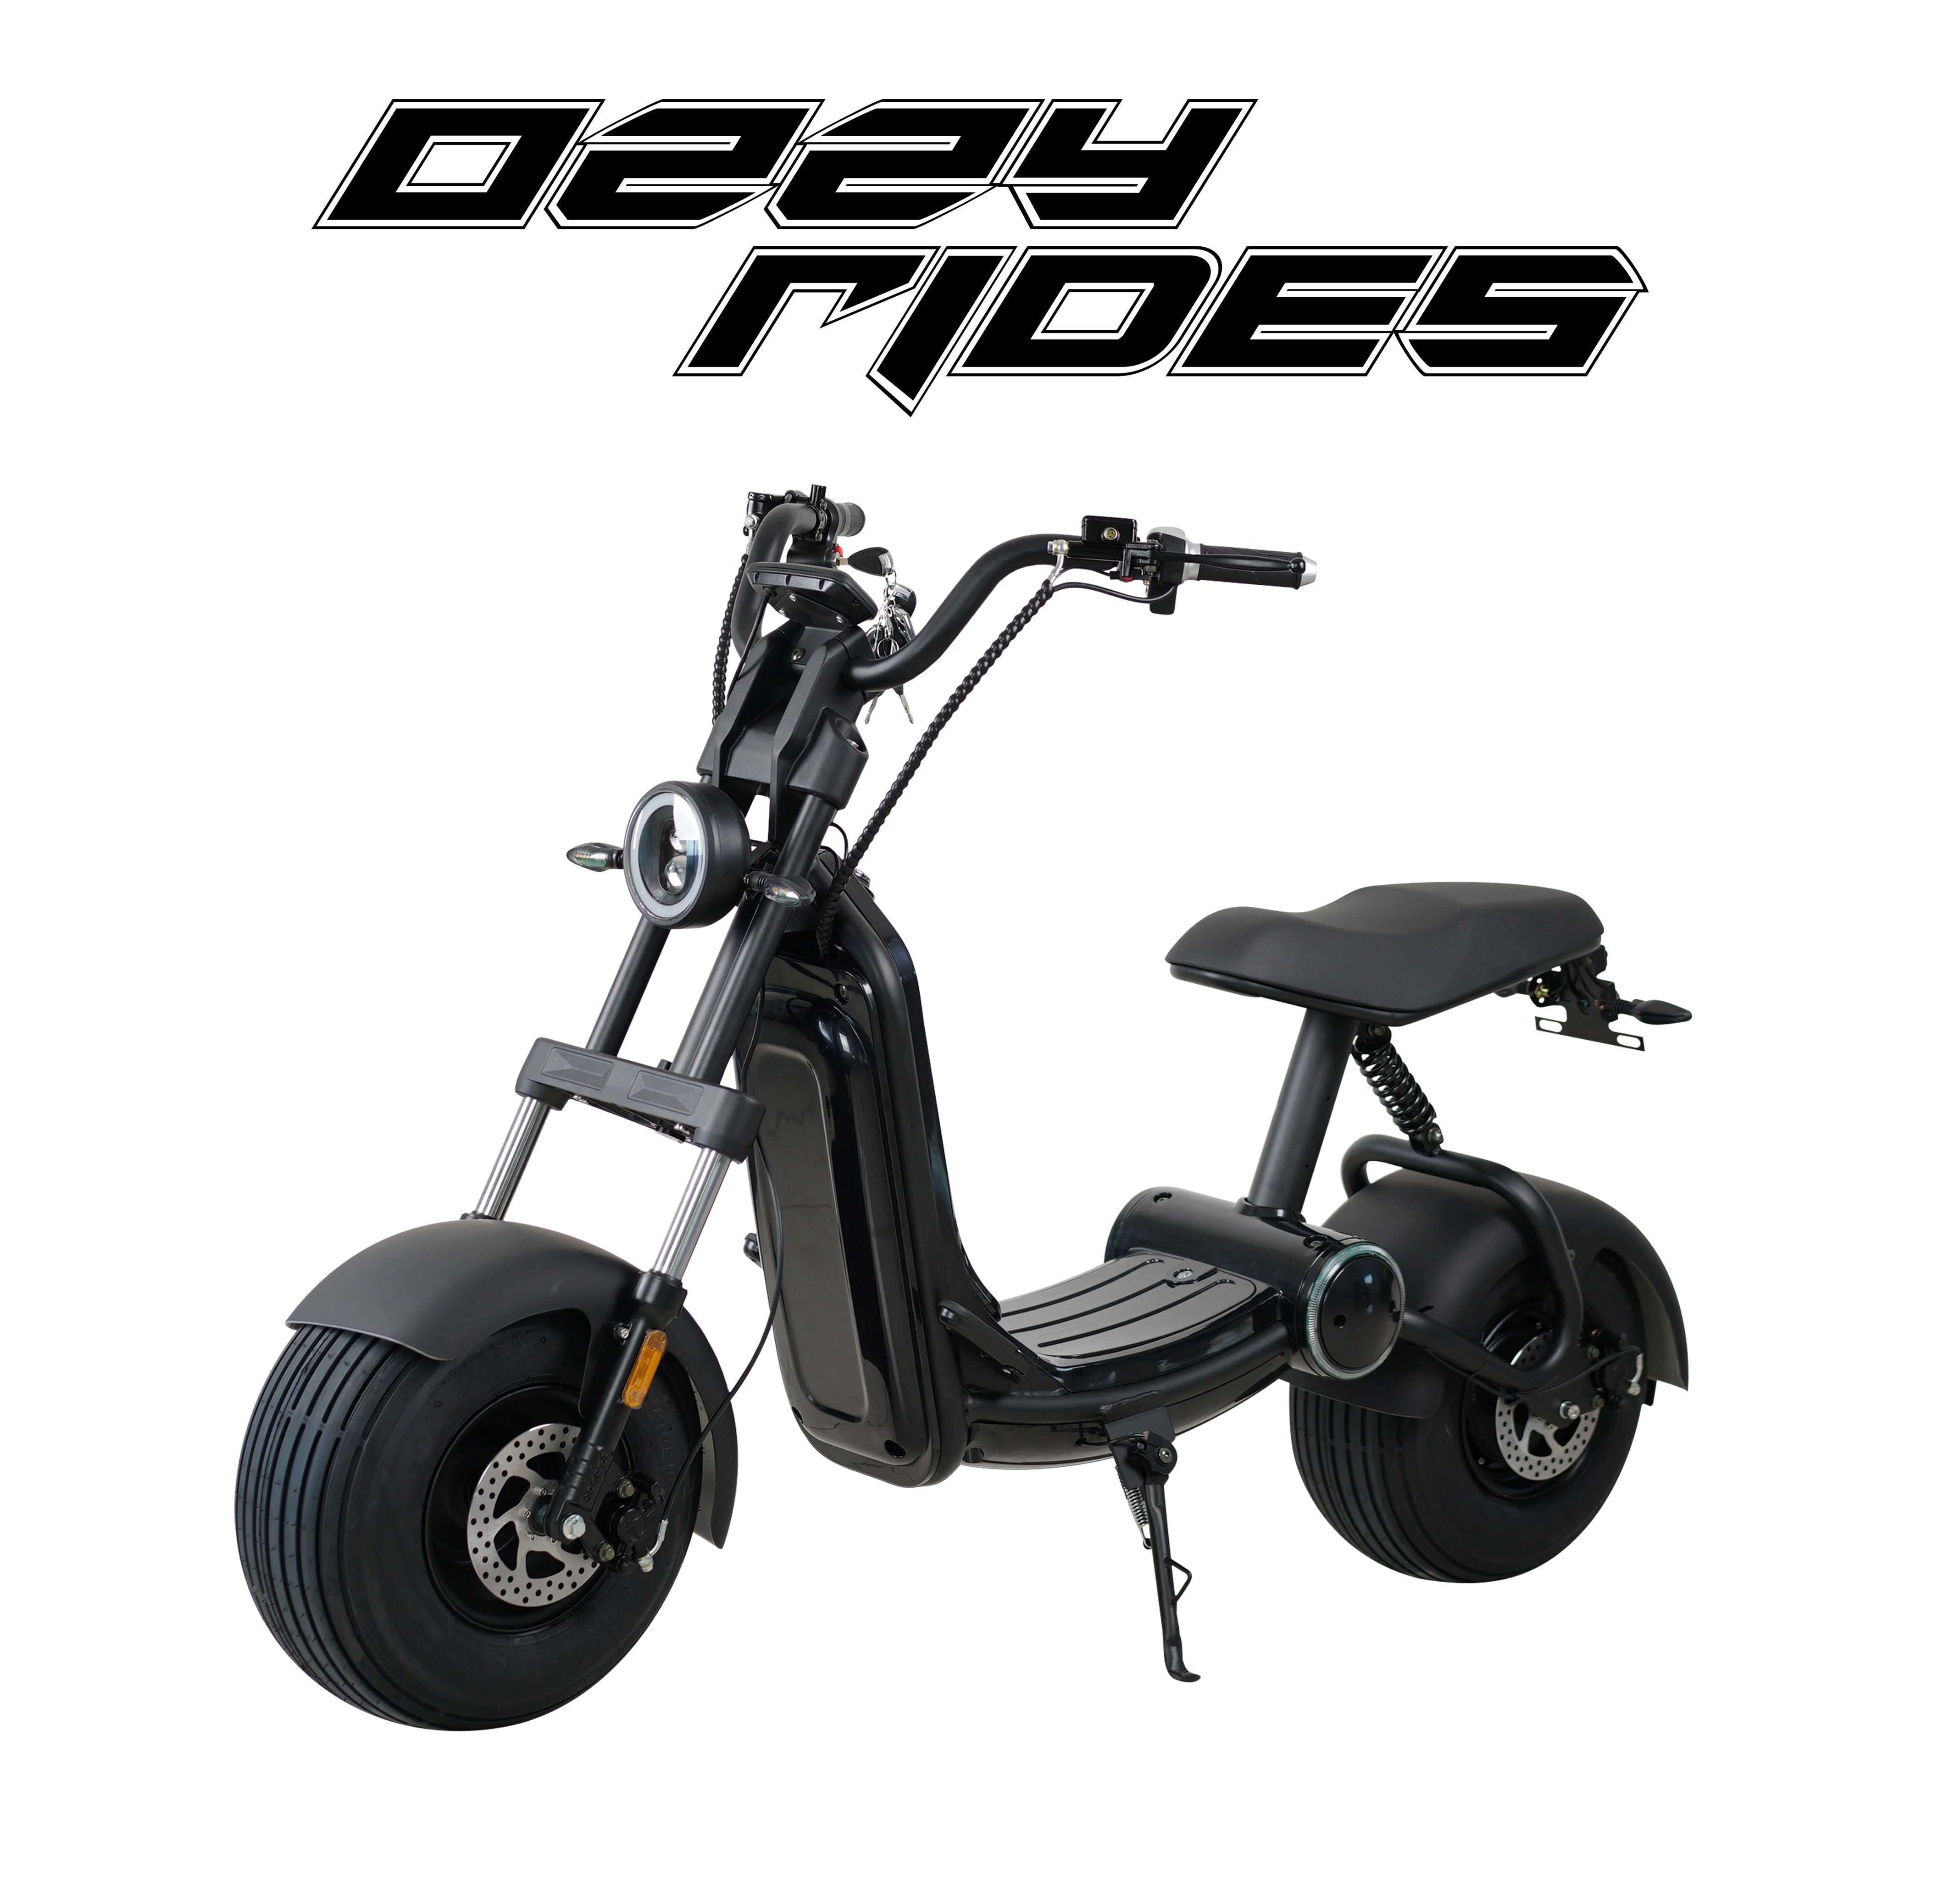 Ozzy-ritten | Apex-Batman | Elektrische scooter kopen Antwerpen | voldaan of zonder rijbewijs | Citycoco Fatboy | Elektrische Chopper Kopen